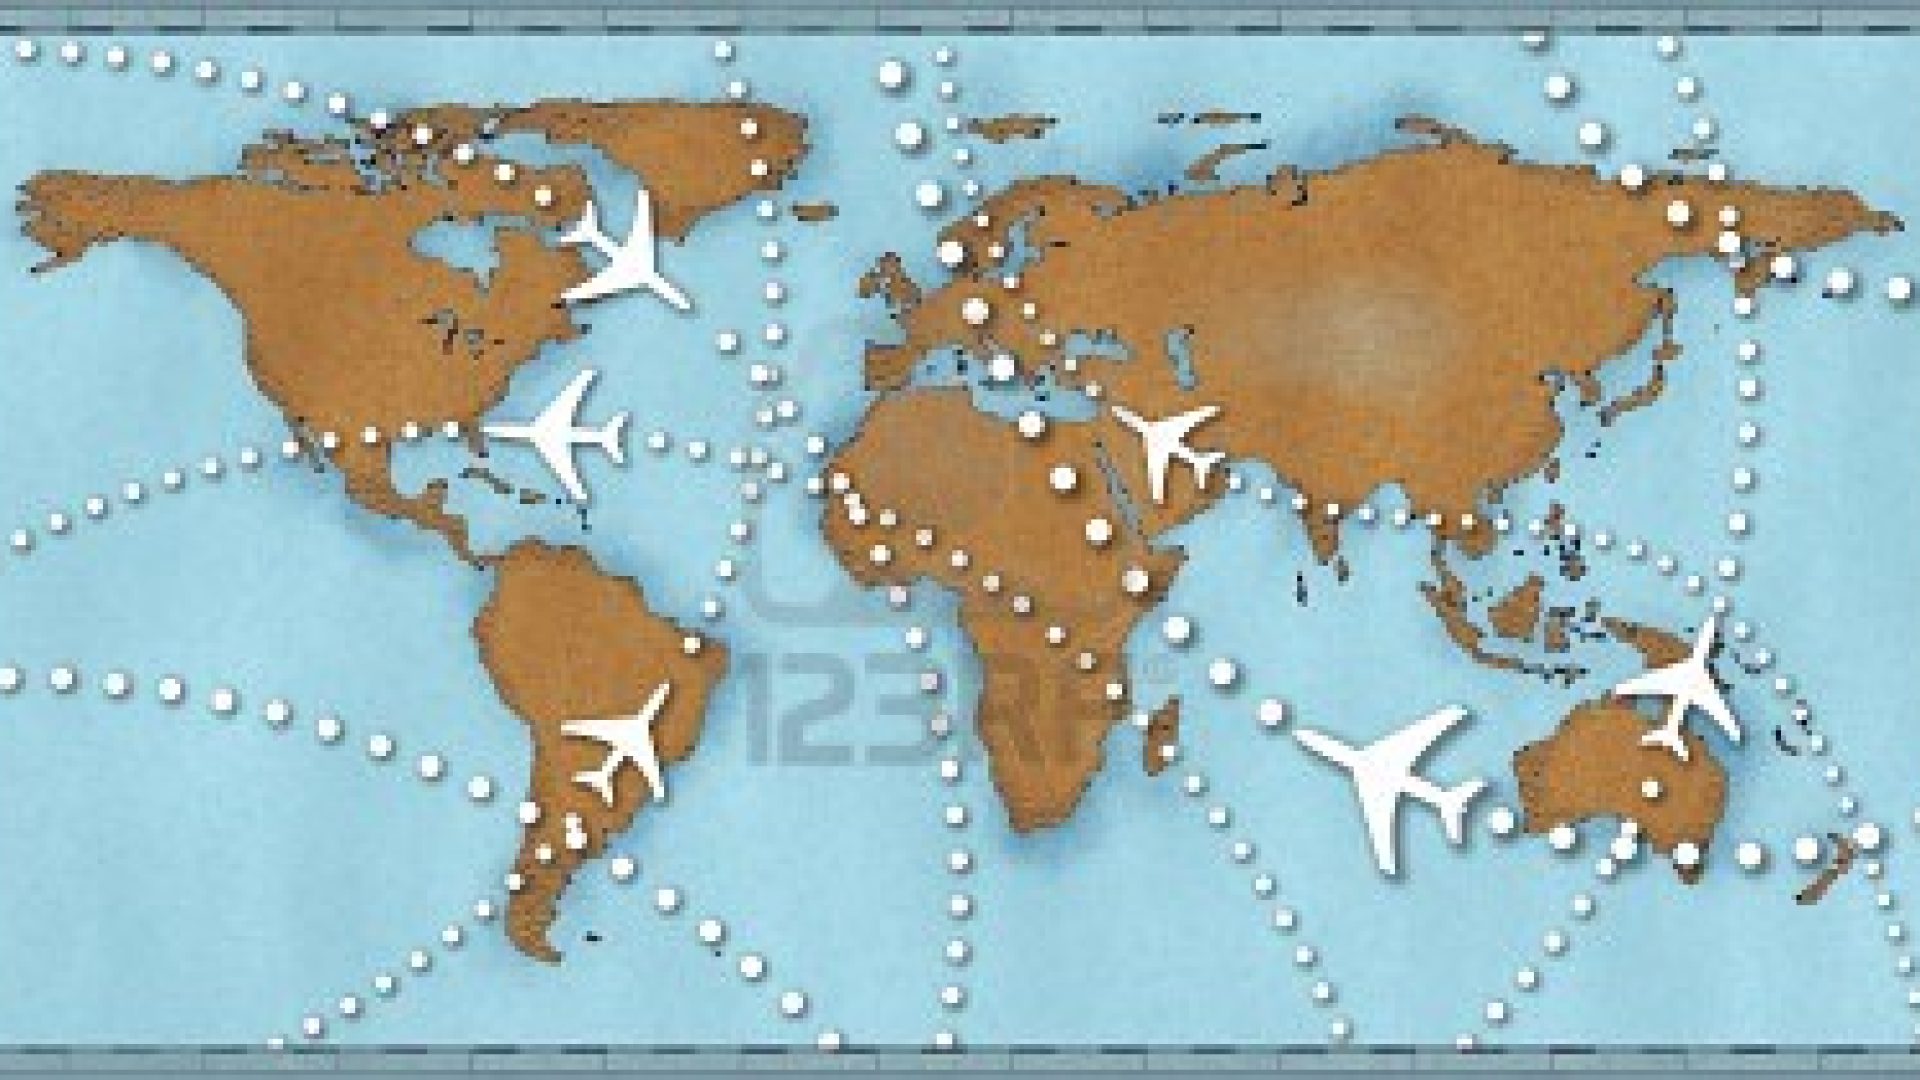 1058-cover-9117757-air-travel-vol-chemins-pointilles-sur-la-carte-du-monde-comme-transporteur-aerien-commercial-trafic